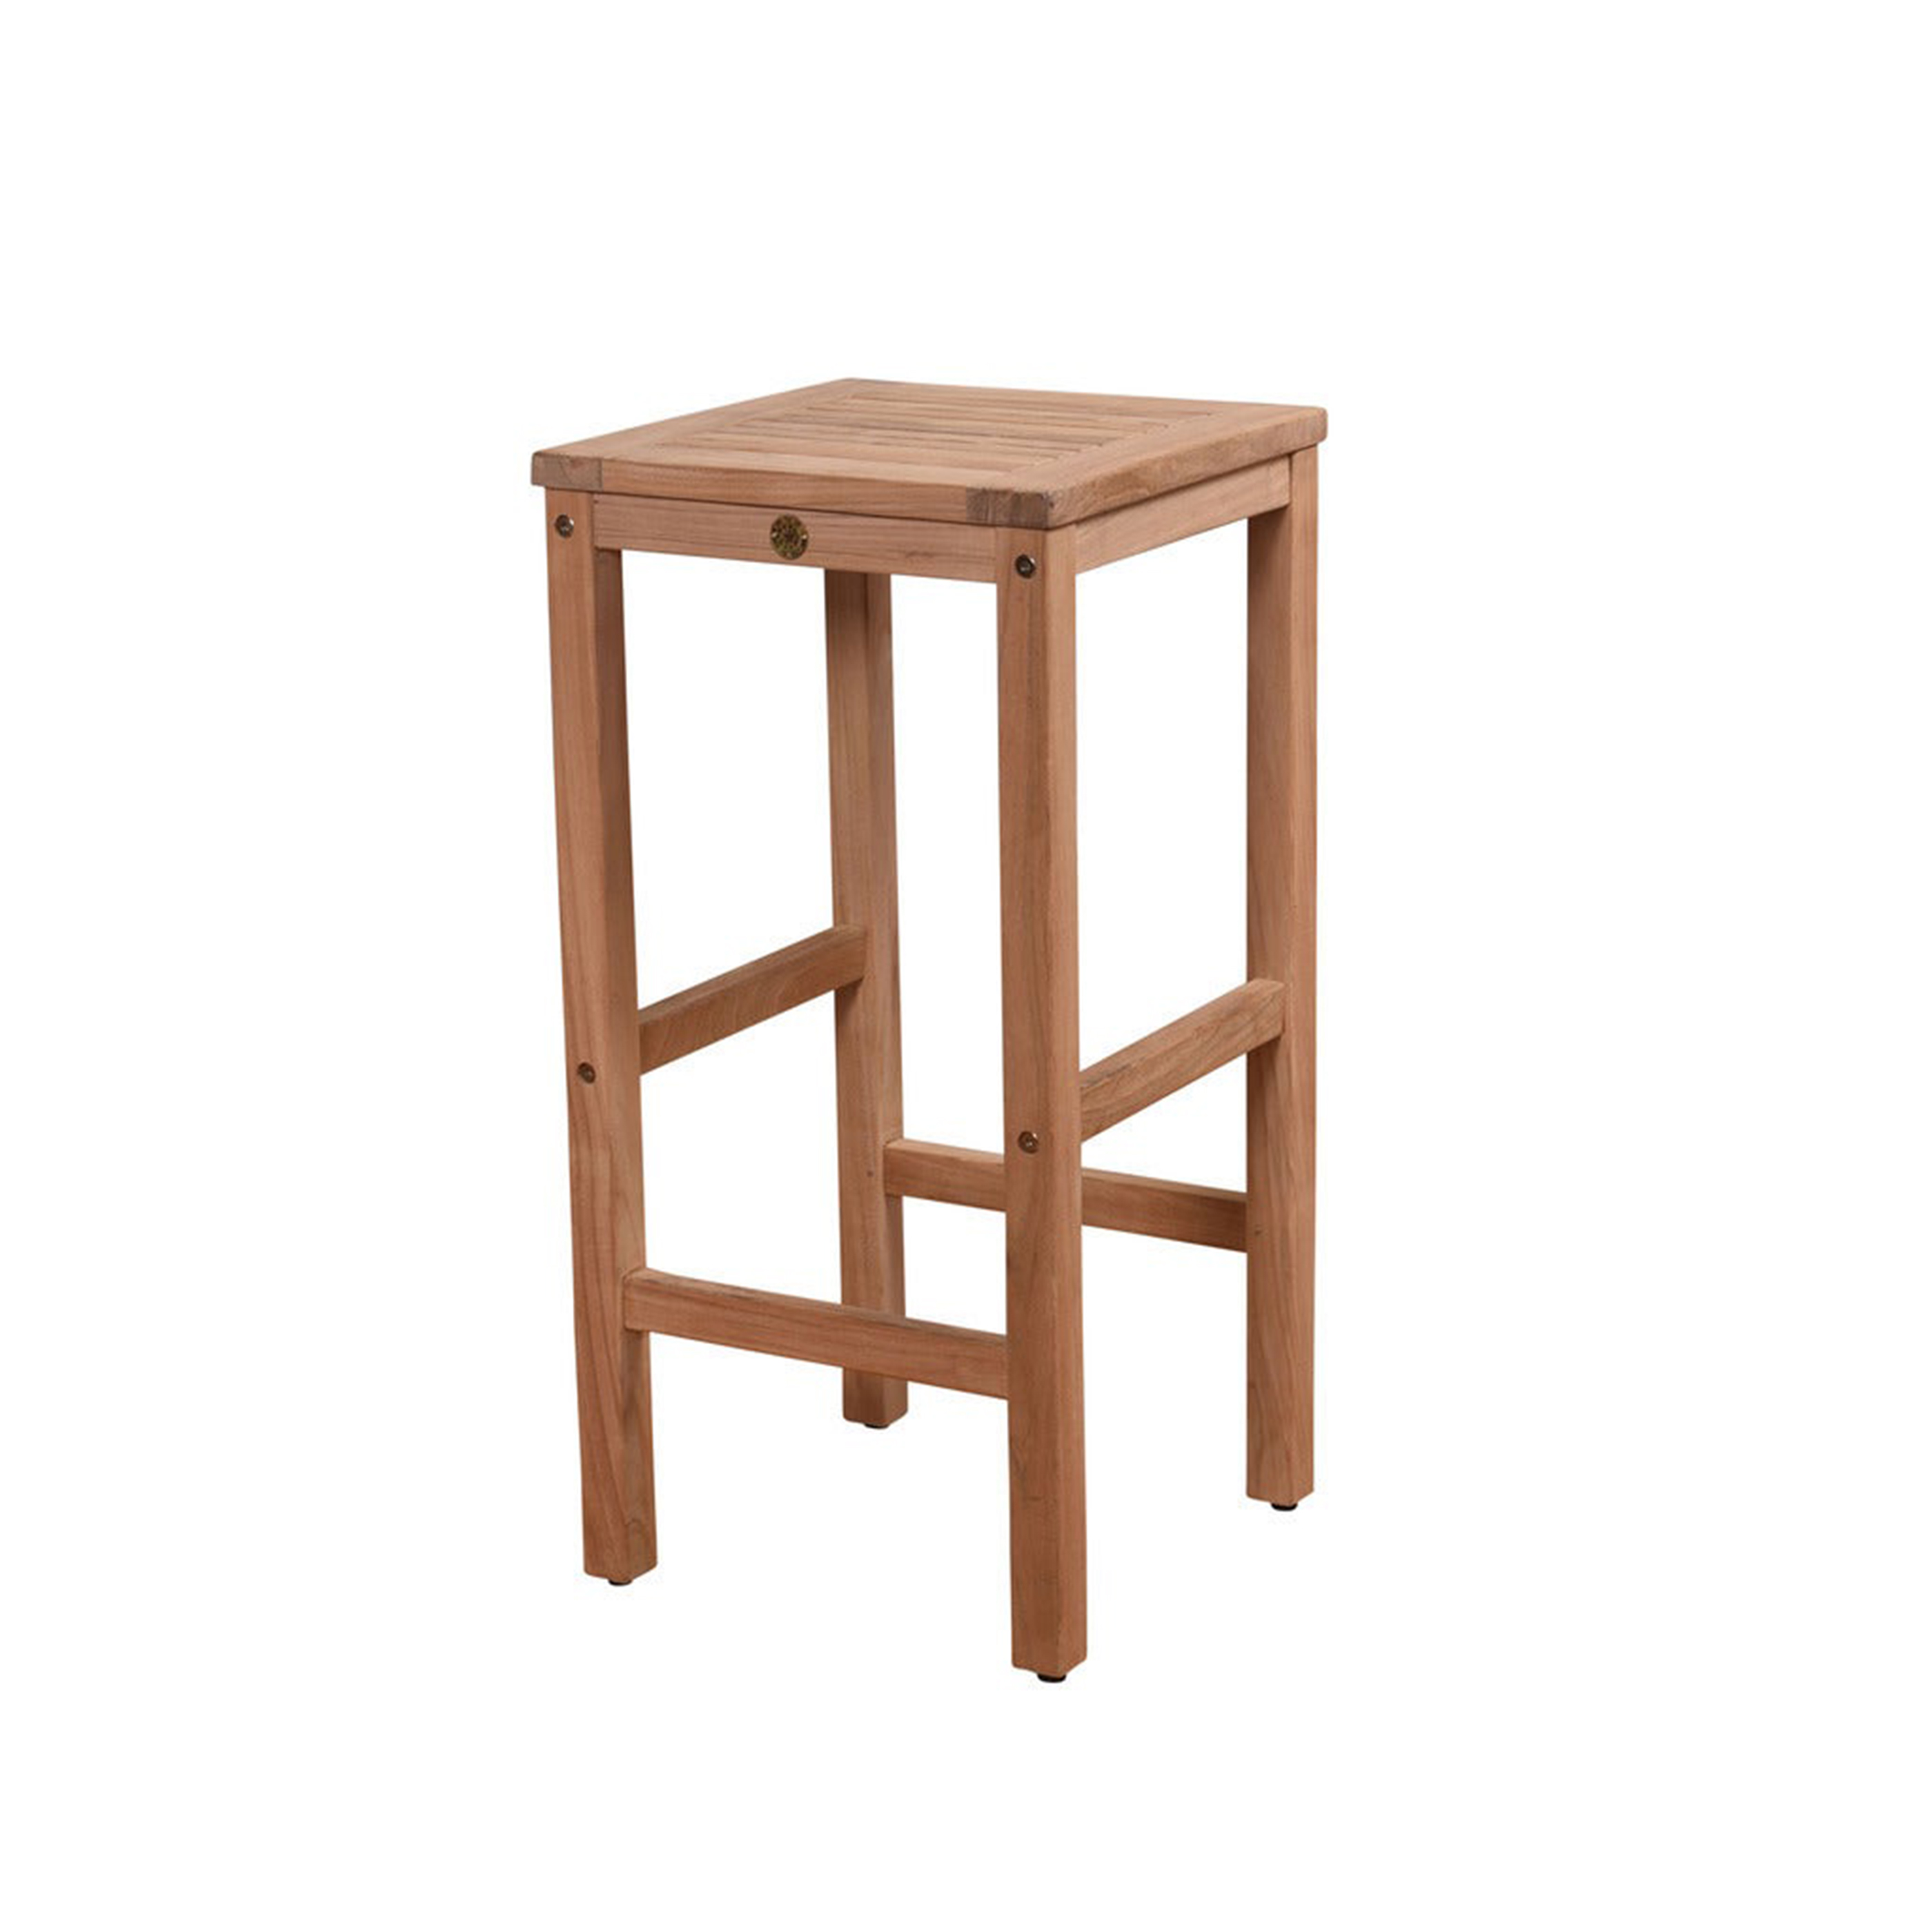 Ghế gỗ - Đồ Gỗ Khải Vy - Công Ty CP Thương Mại Sản Xuất Khải Vy Quy Nhơn